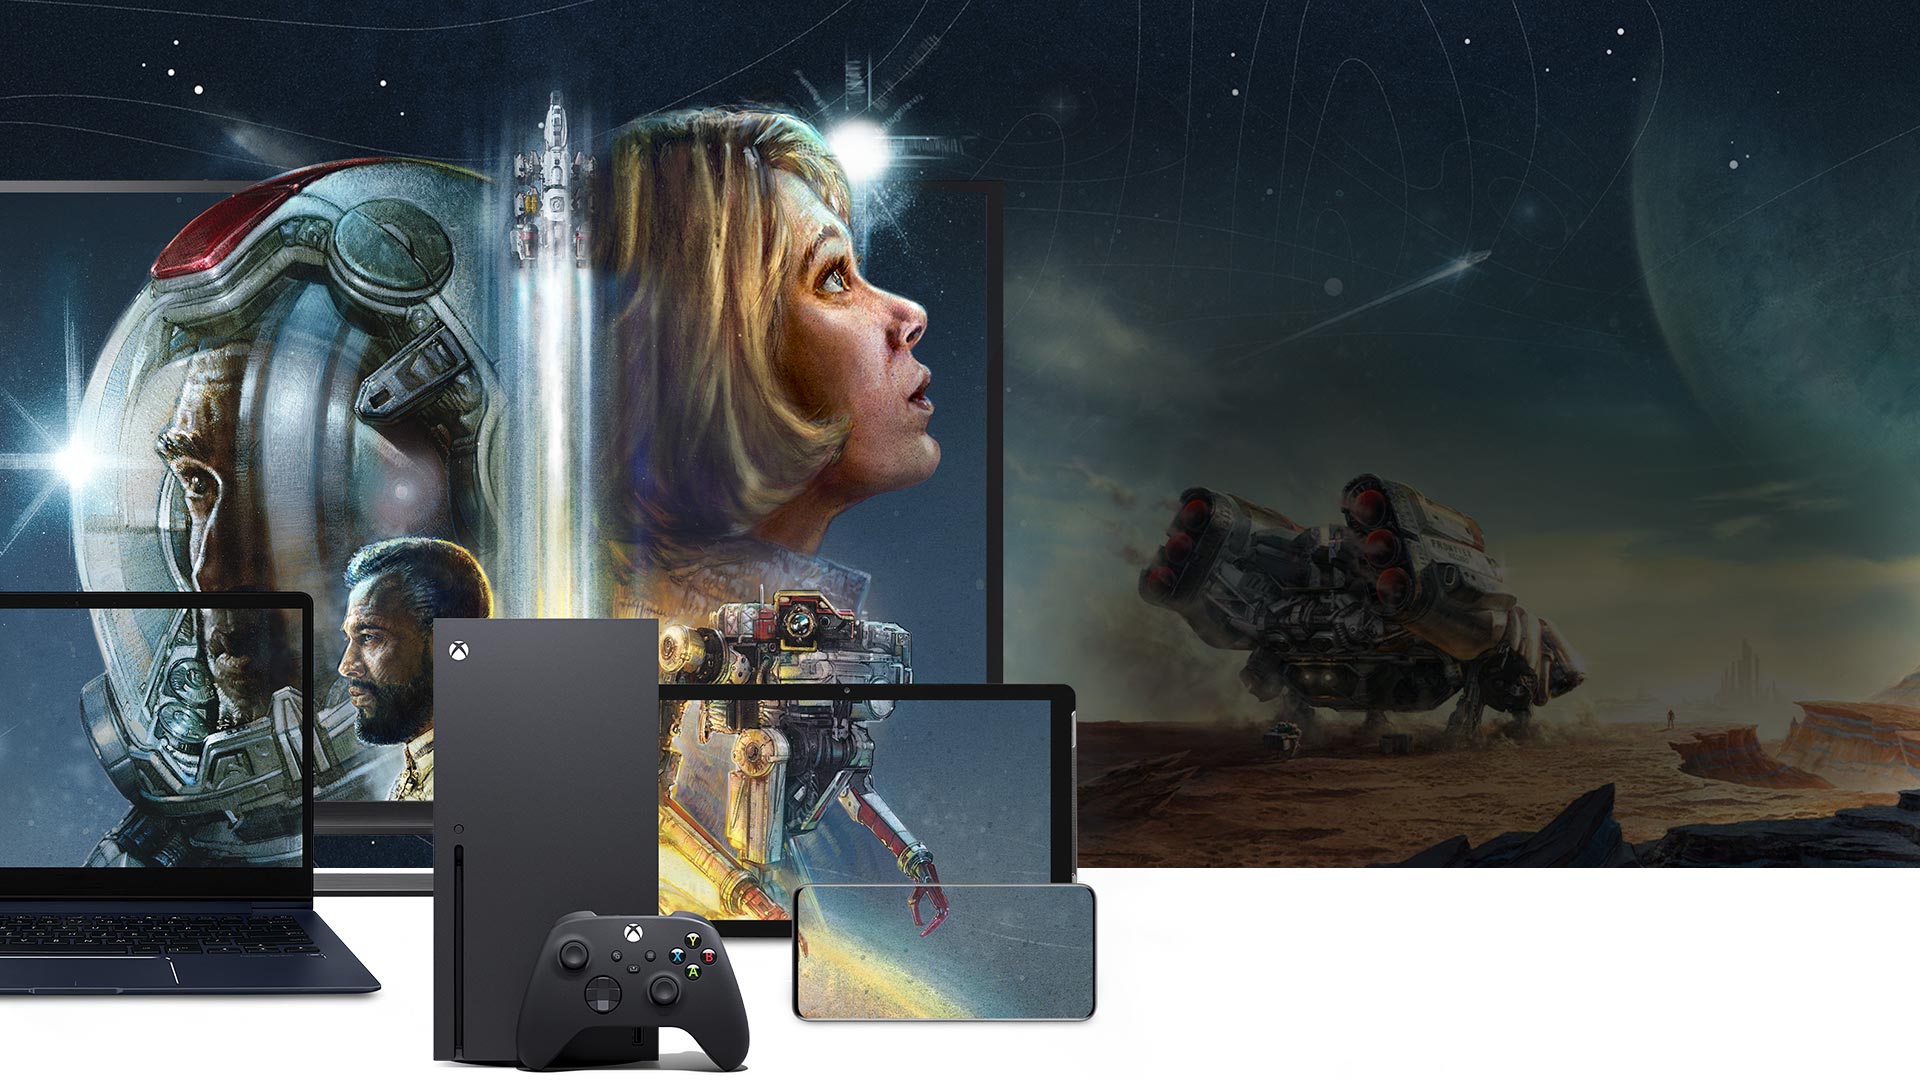 Konsola Xbox Series X z komputerem PC, tabletem i telefonem, na którym widoczna jest gra Starfield. Odkrywca stoi na krawędzi kanionu na zewnątrz statku kosmicznego.